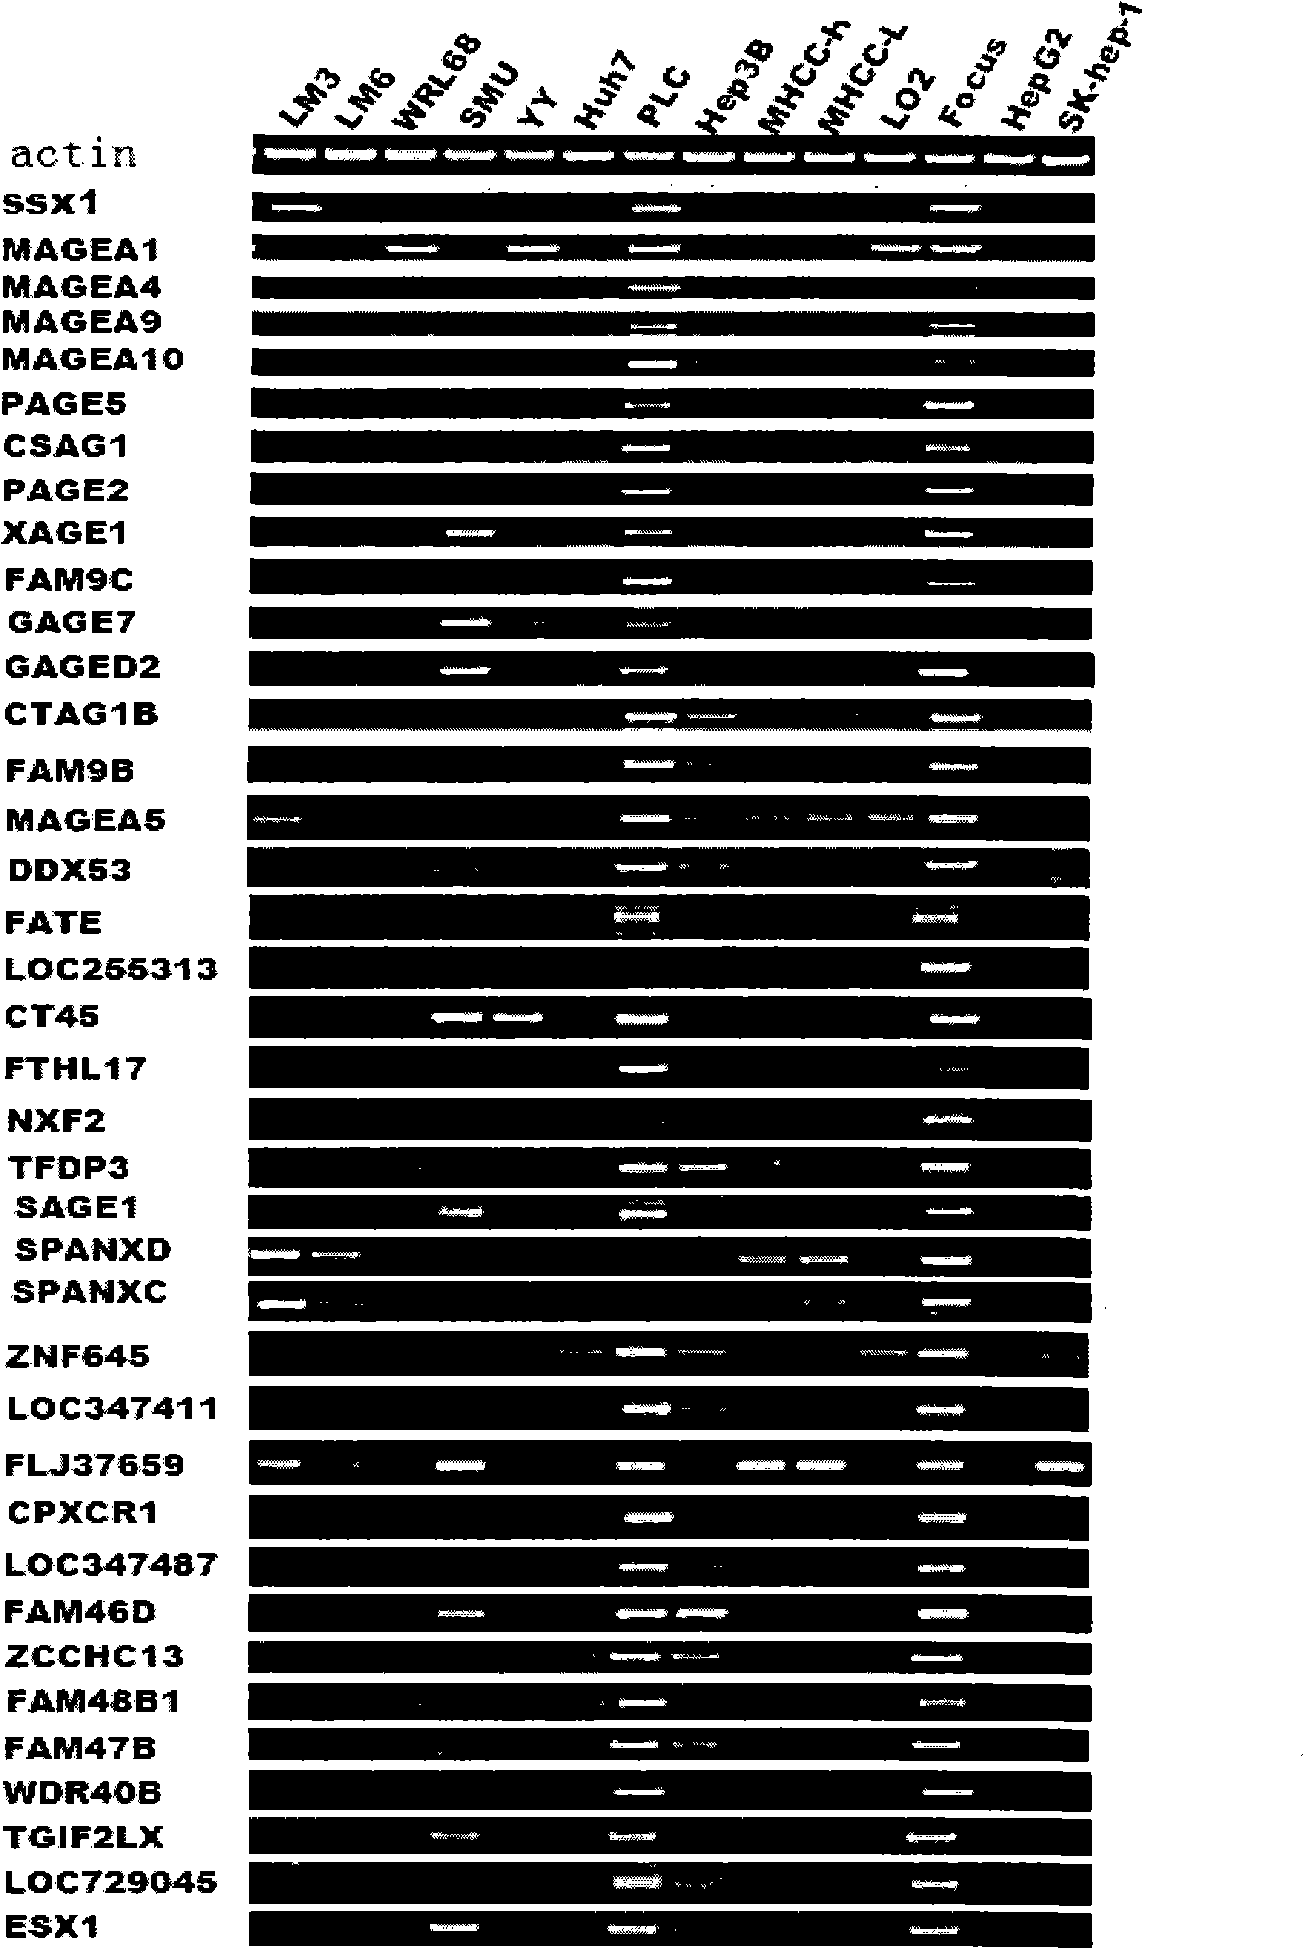 Uses of CXorf41 gene